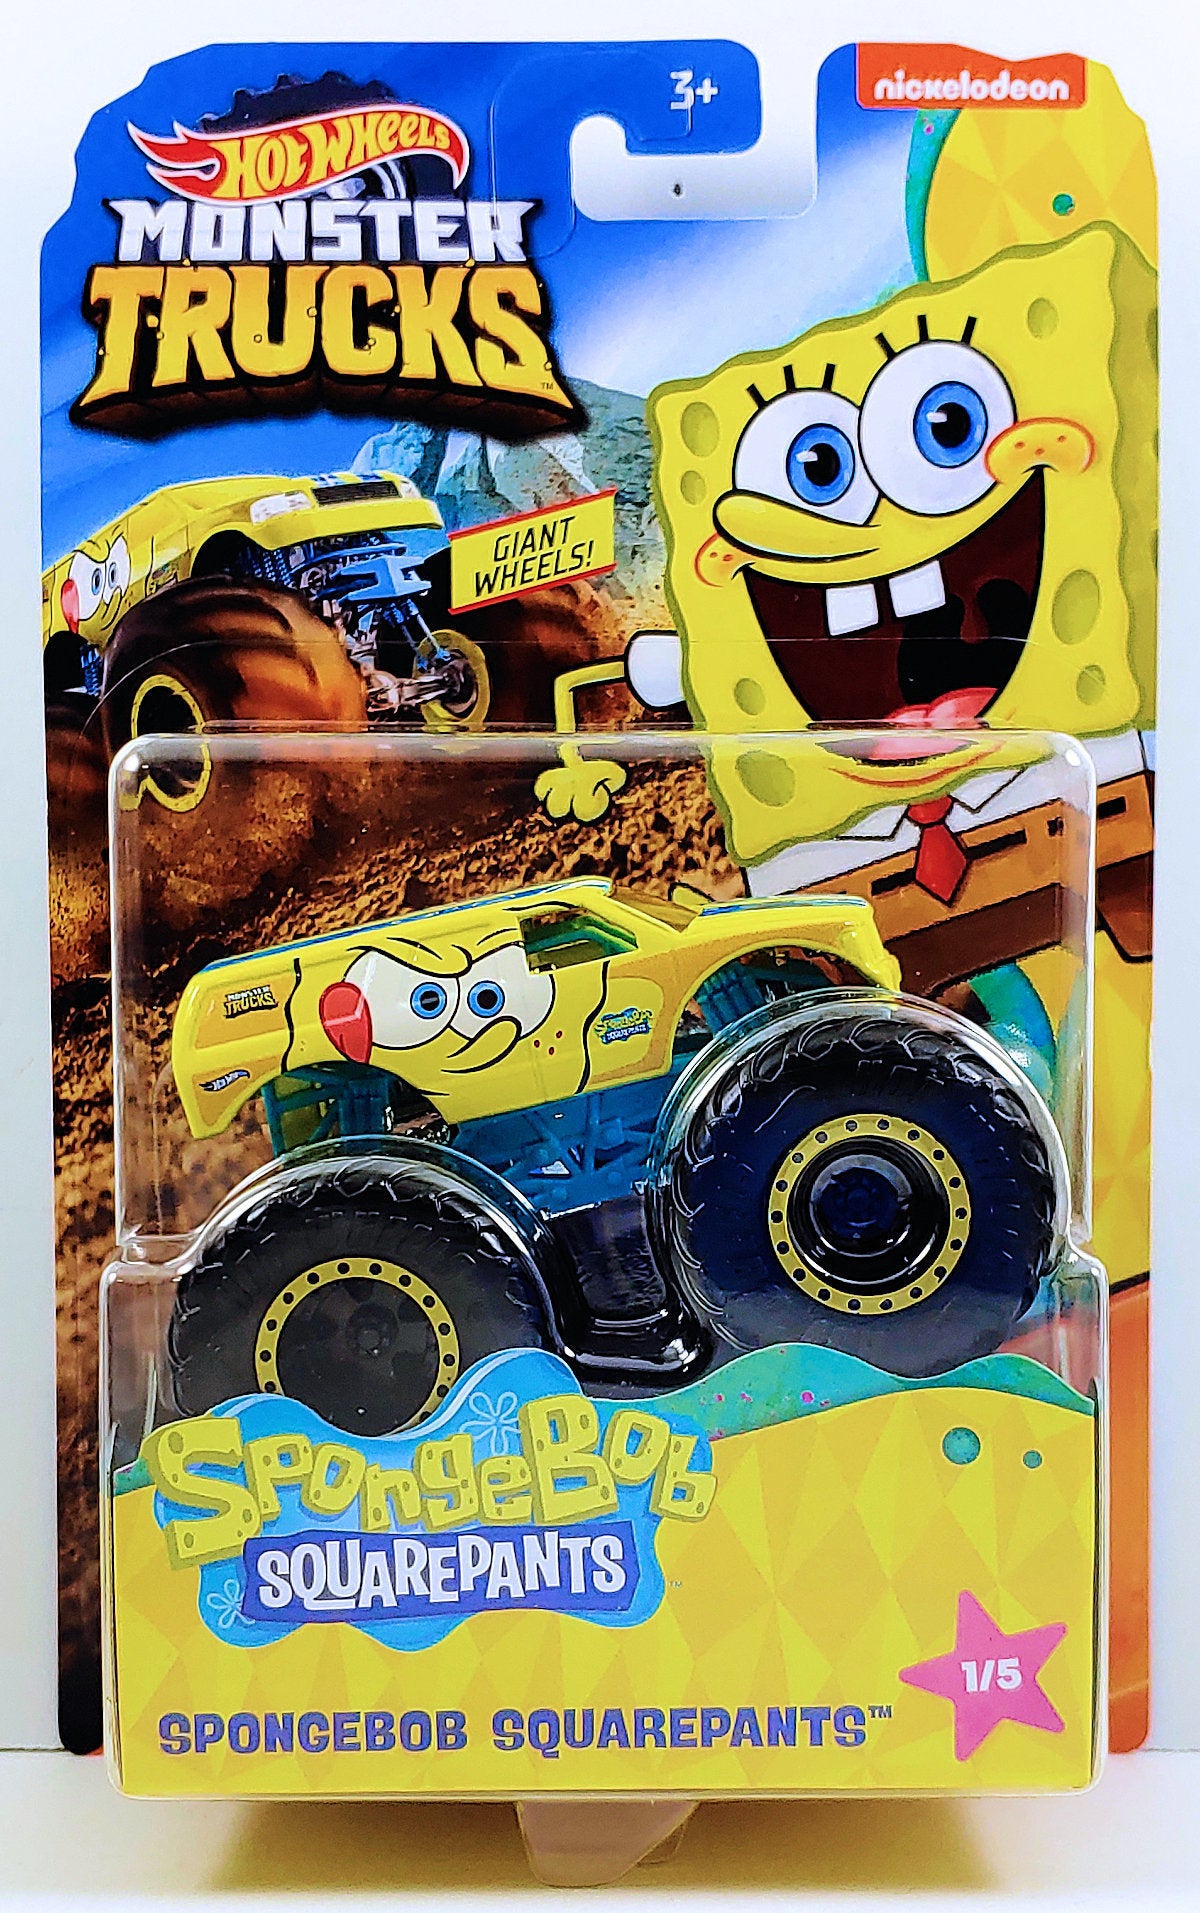 Hot Wheels 2020 - Monster Trucks / Spongebob Squarepants 1/5 - Spongebob Squarepants(town hauler) - Yellow